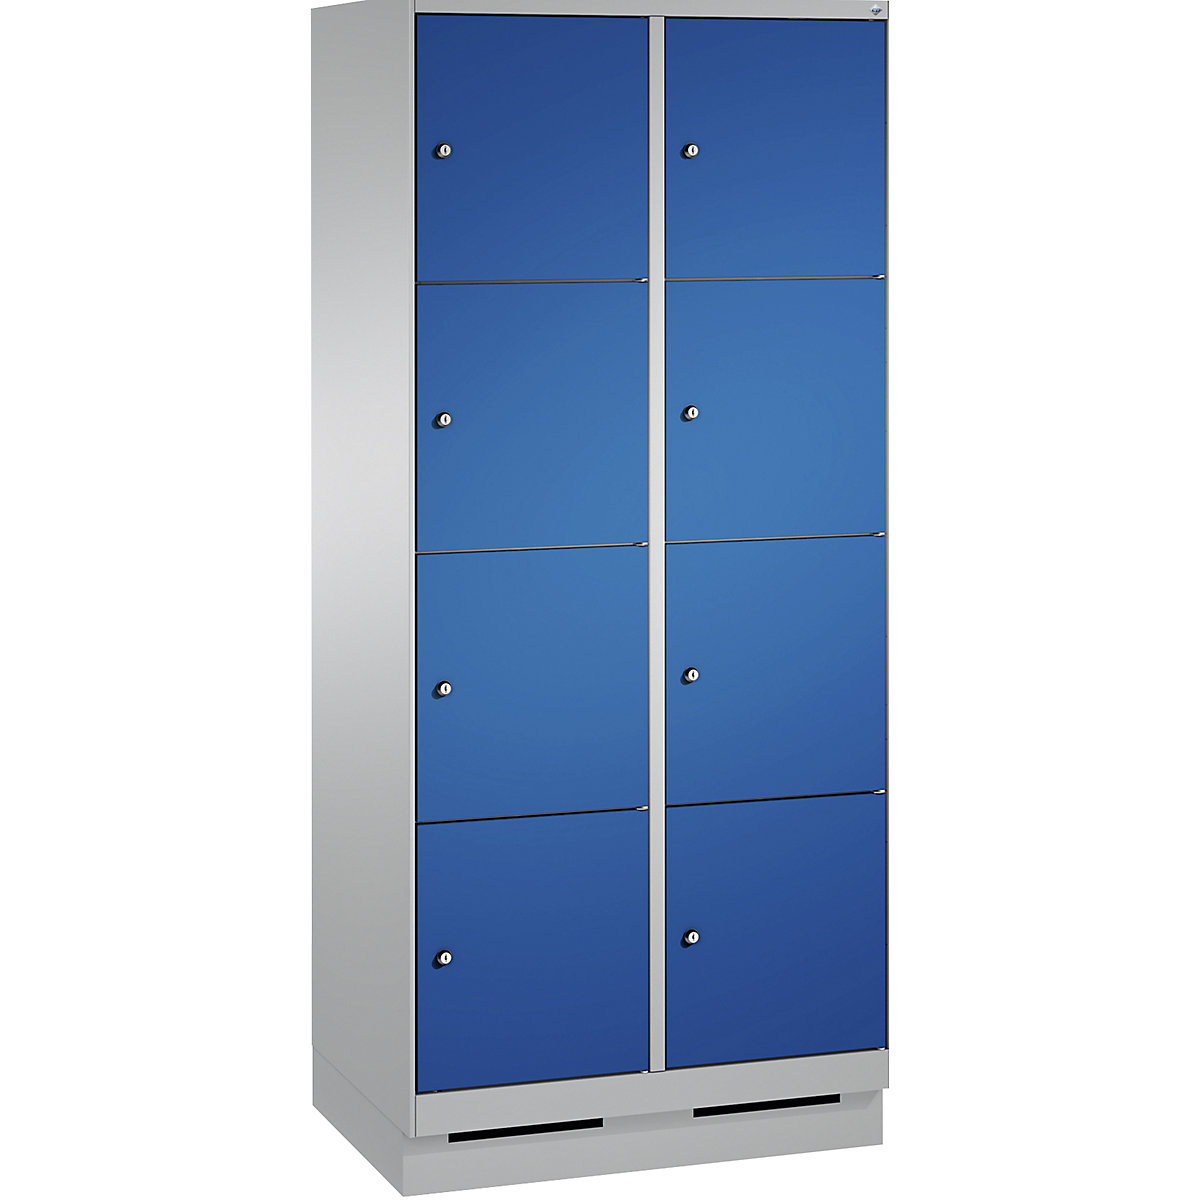 Armoire à casiers sur socle EVOLO – C+P, 2 compartiments, 4 casiers chacun, largeur compartiments 400 mm, aluminium / bleu gentiane-16